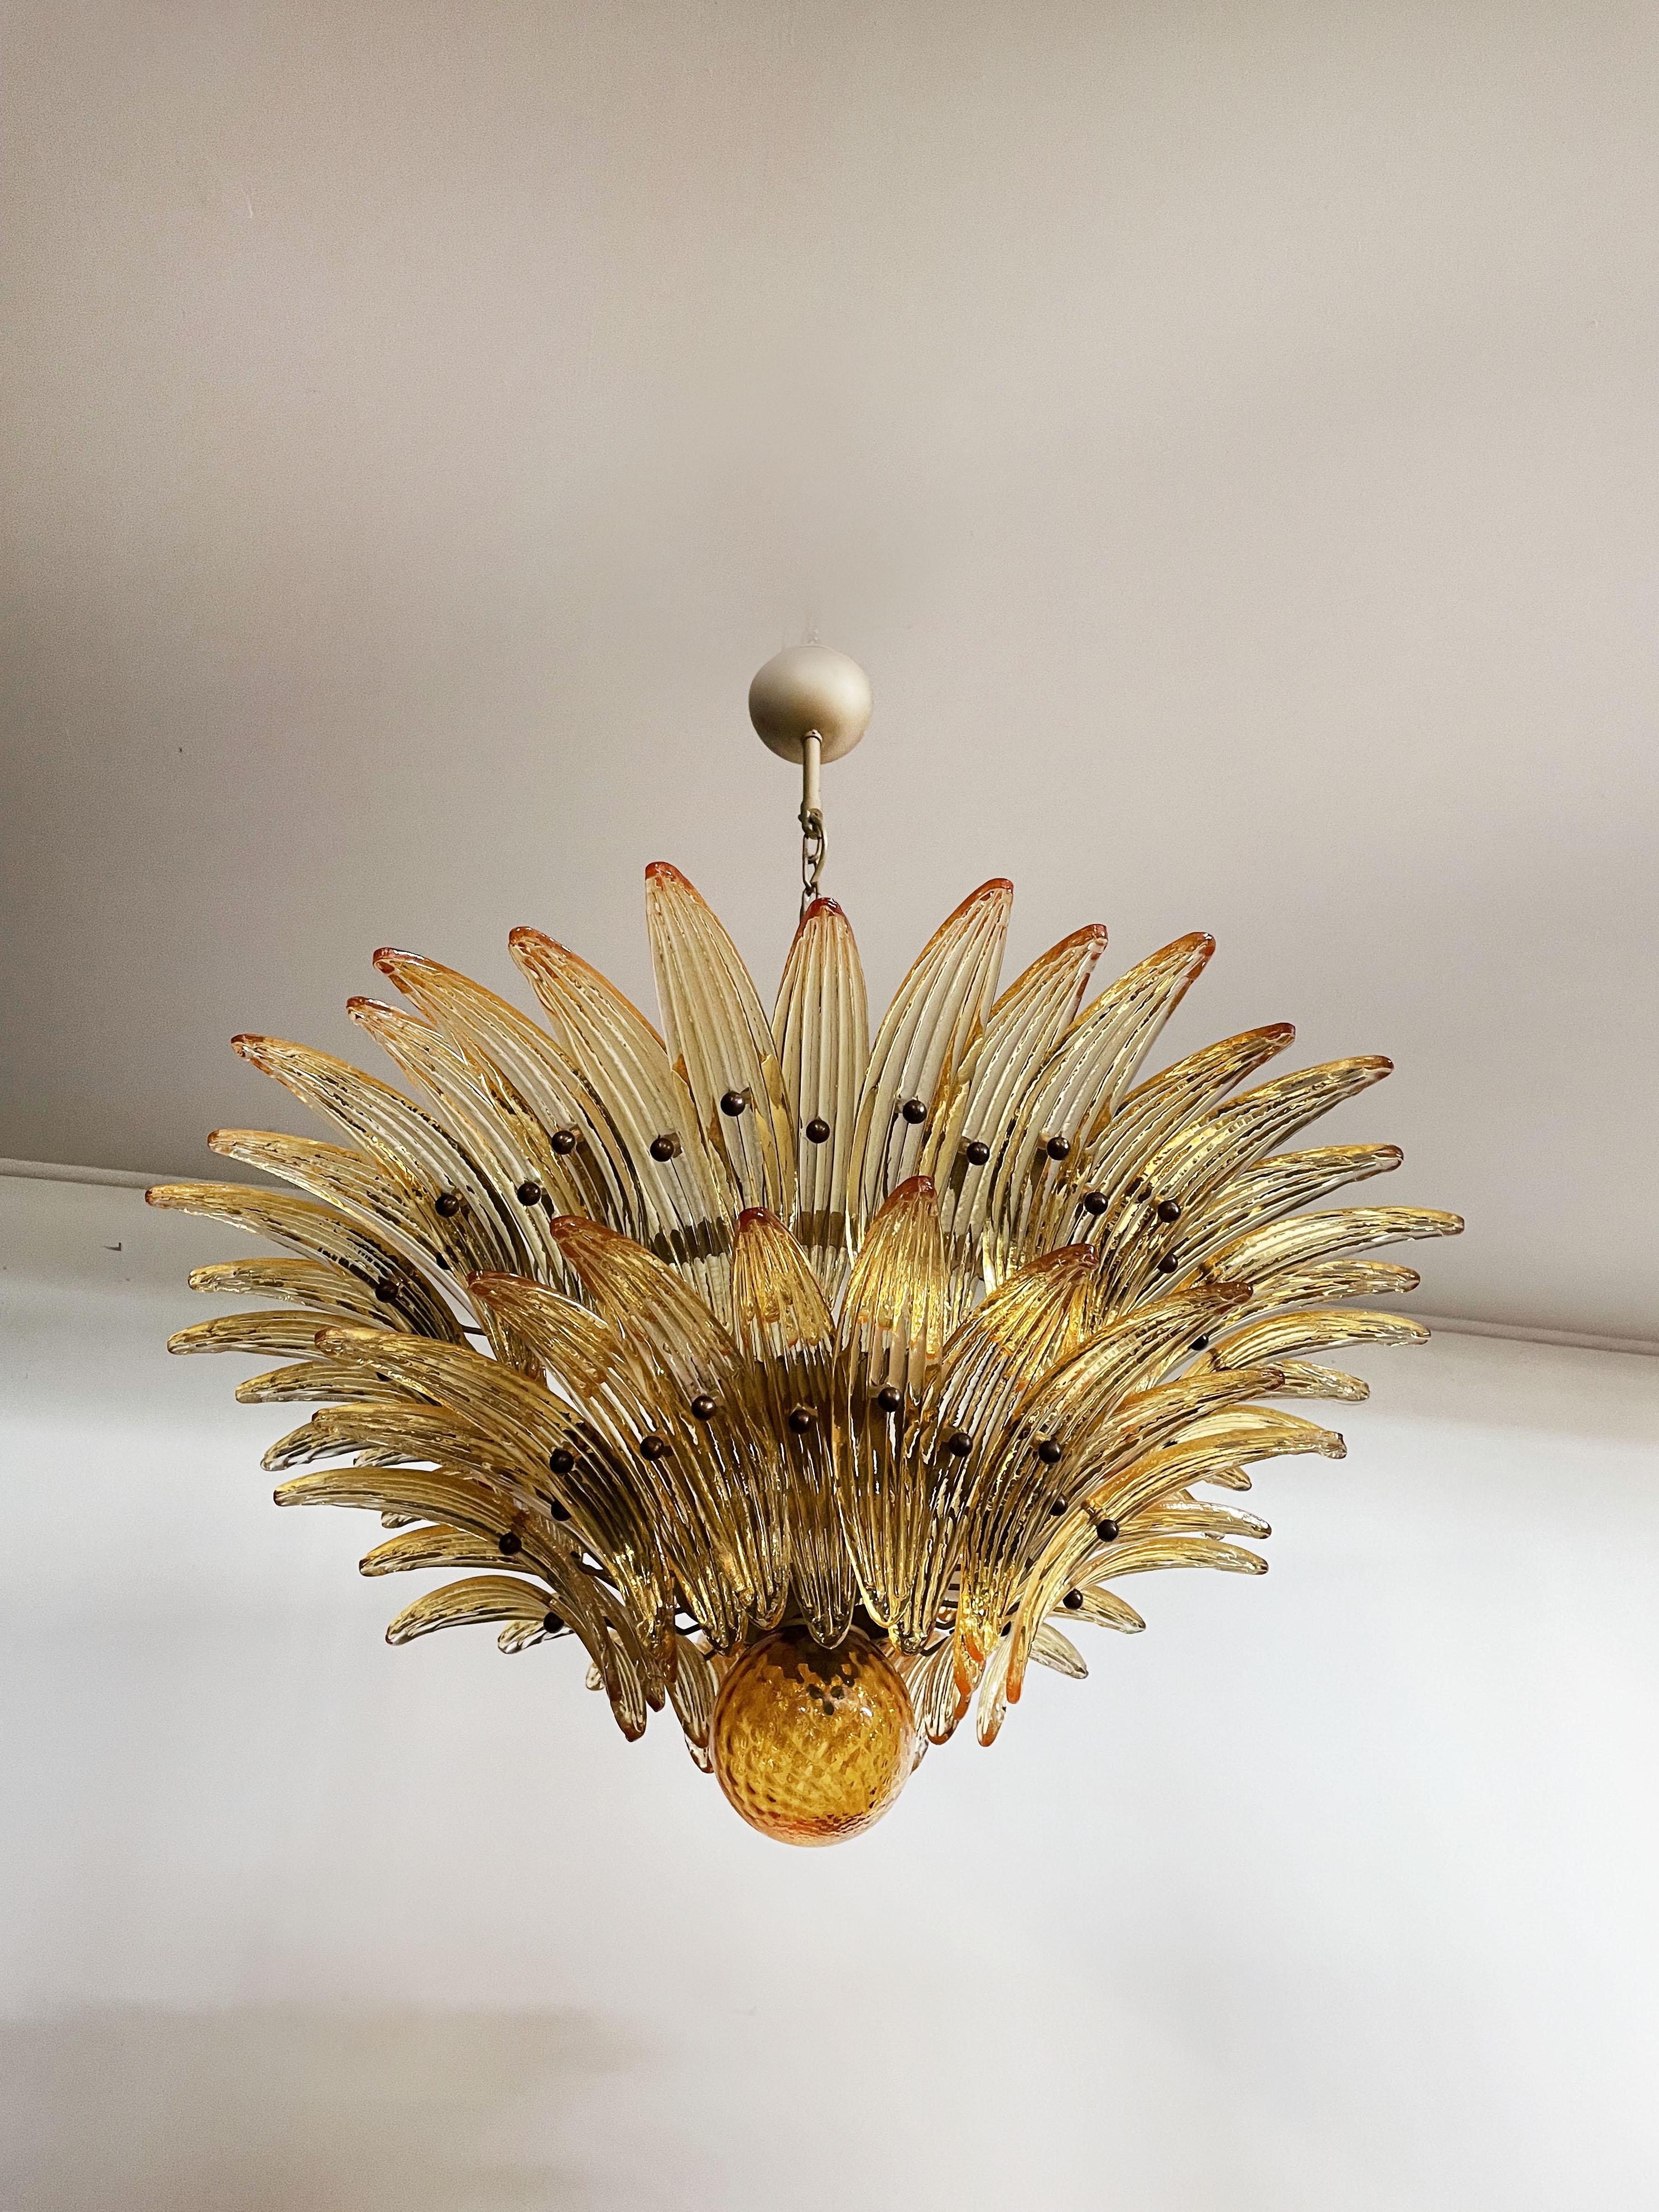 Luxuriöser und ECHTER Murano-Glas-Kronleuchter. HANDGEFERTIGT IN MURANO. Es besteht aus 58 Murano-Bernsteingläsern in einem goldenen Metallrahmen.  Der Kronleuchter hat auch eine Murano-Glaskugel am Ende der Lampe. Murano mundgeblasenes Glas nach